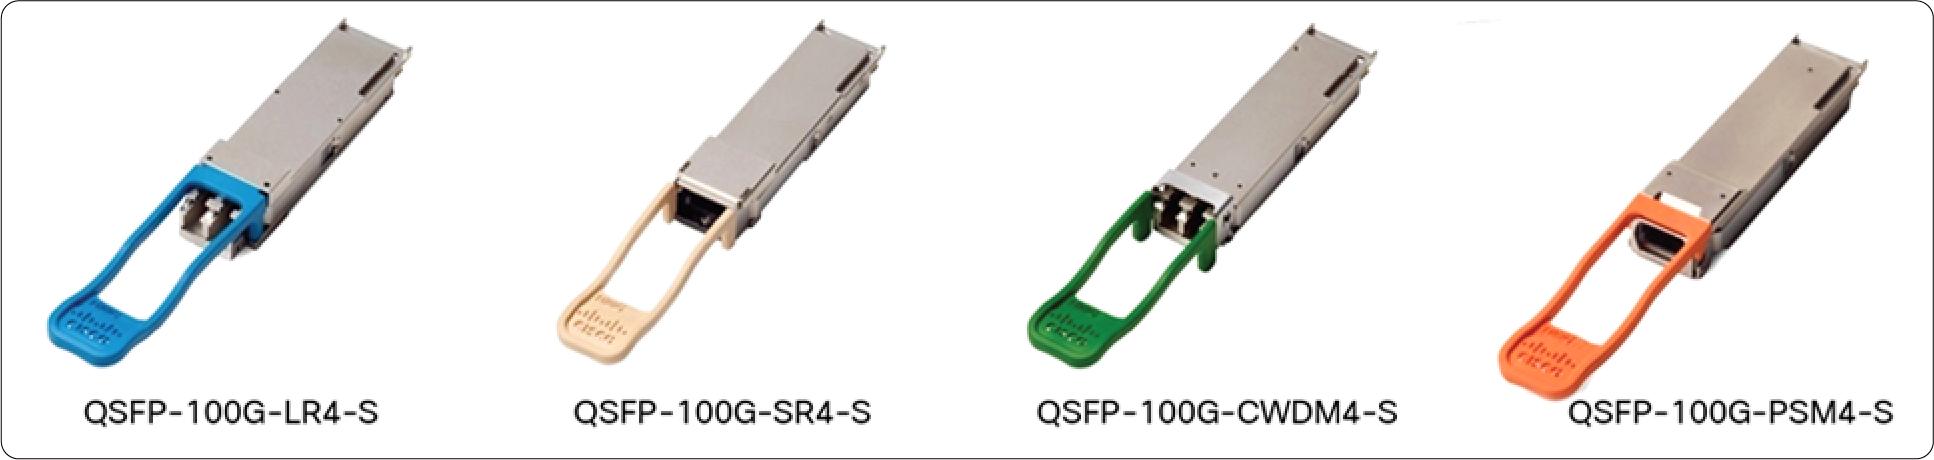 CPAK-100G-CWDM4 Cisco 100 Gigabit Modules - Cisco 100GBASE QSFP Modules - 2